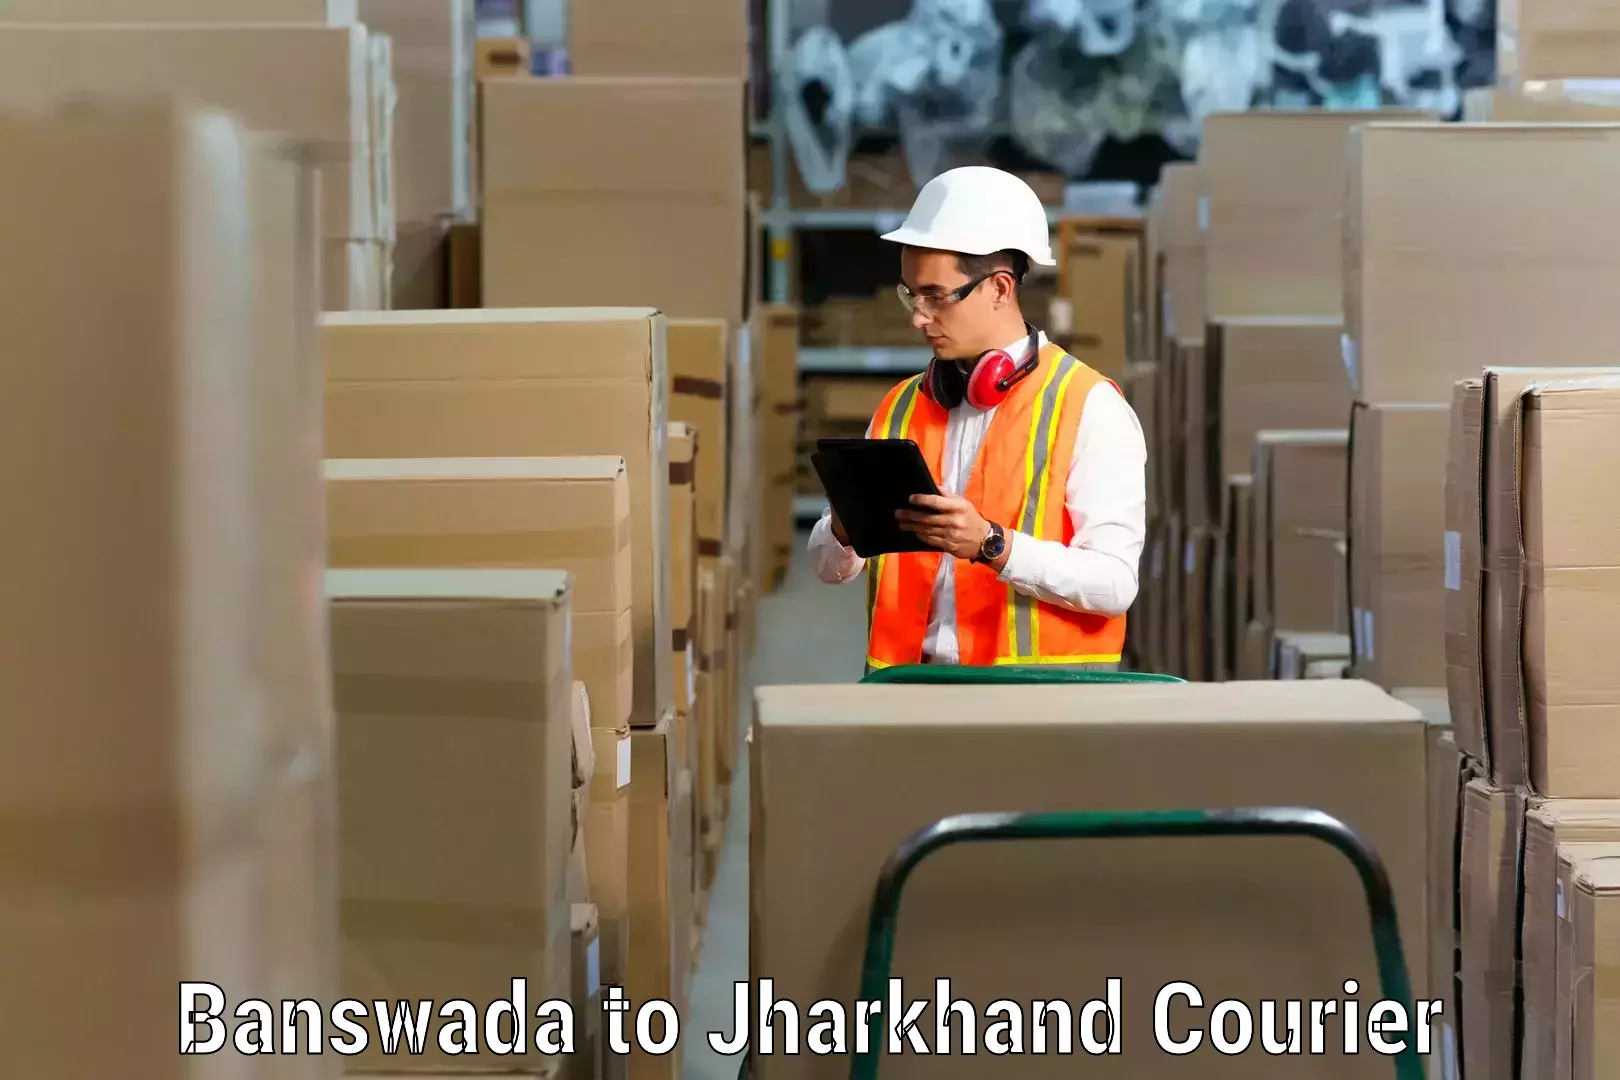 Furniture transport company Banswada to Govindpur